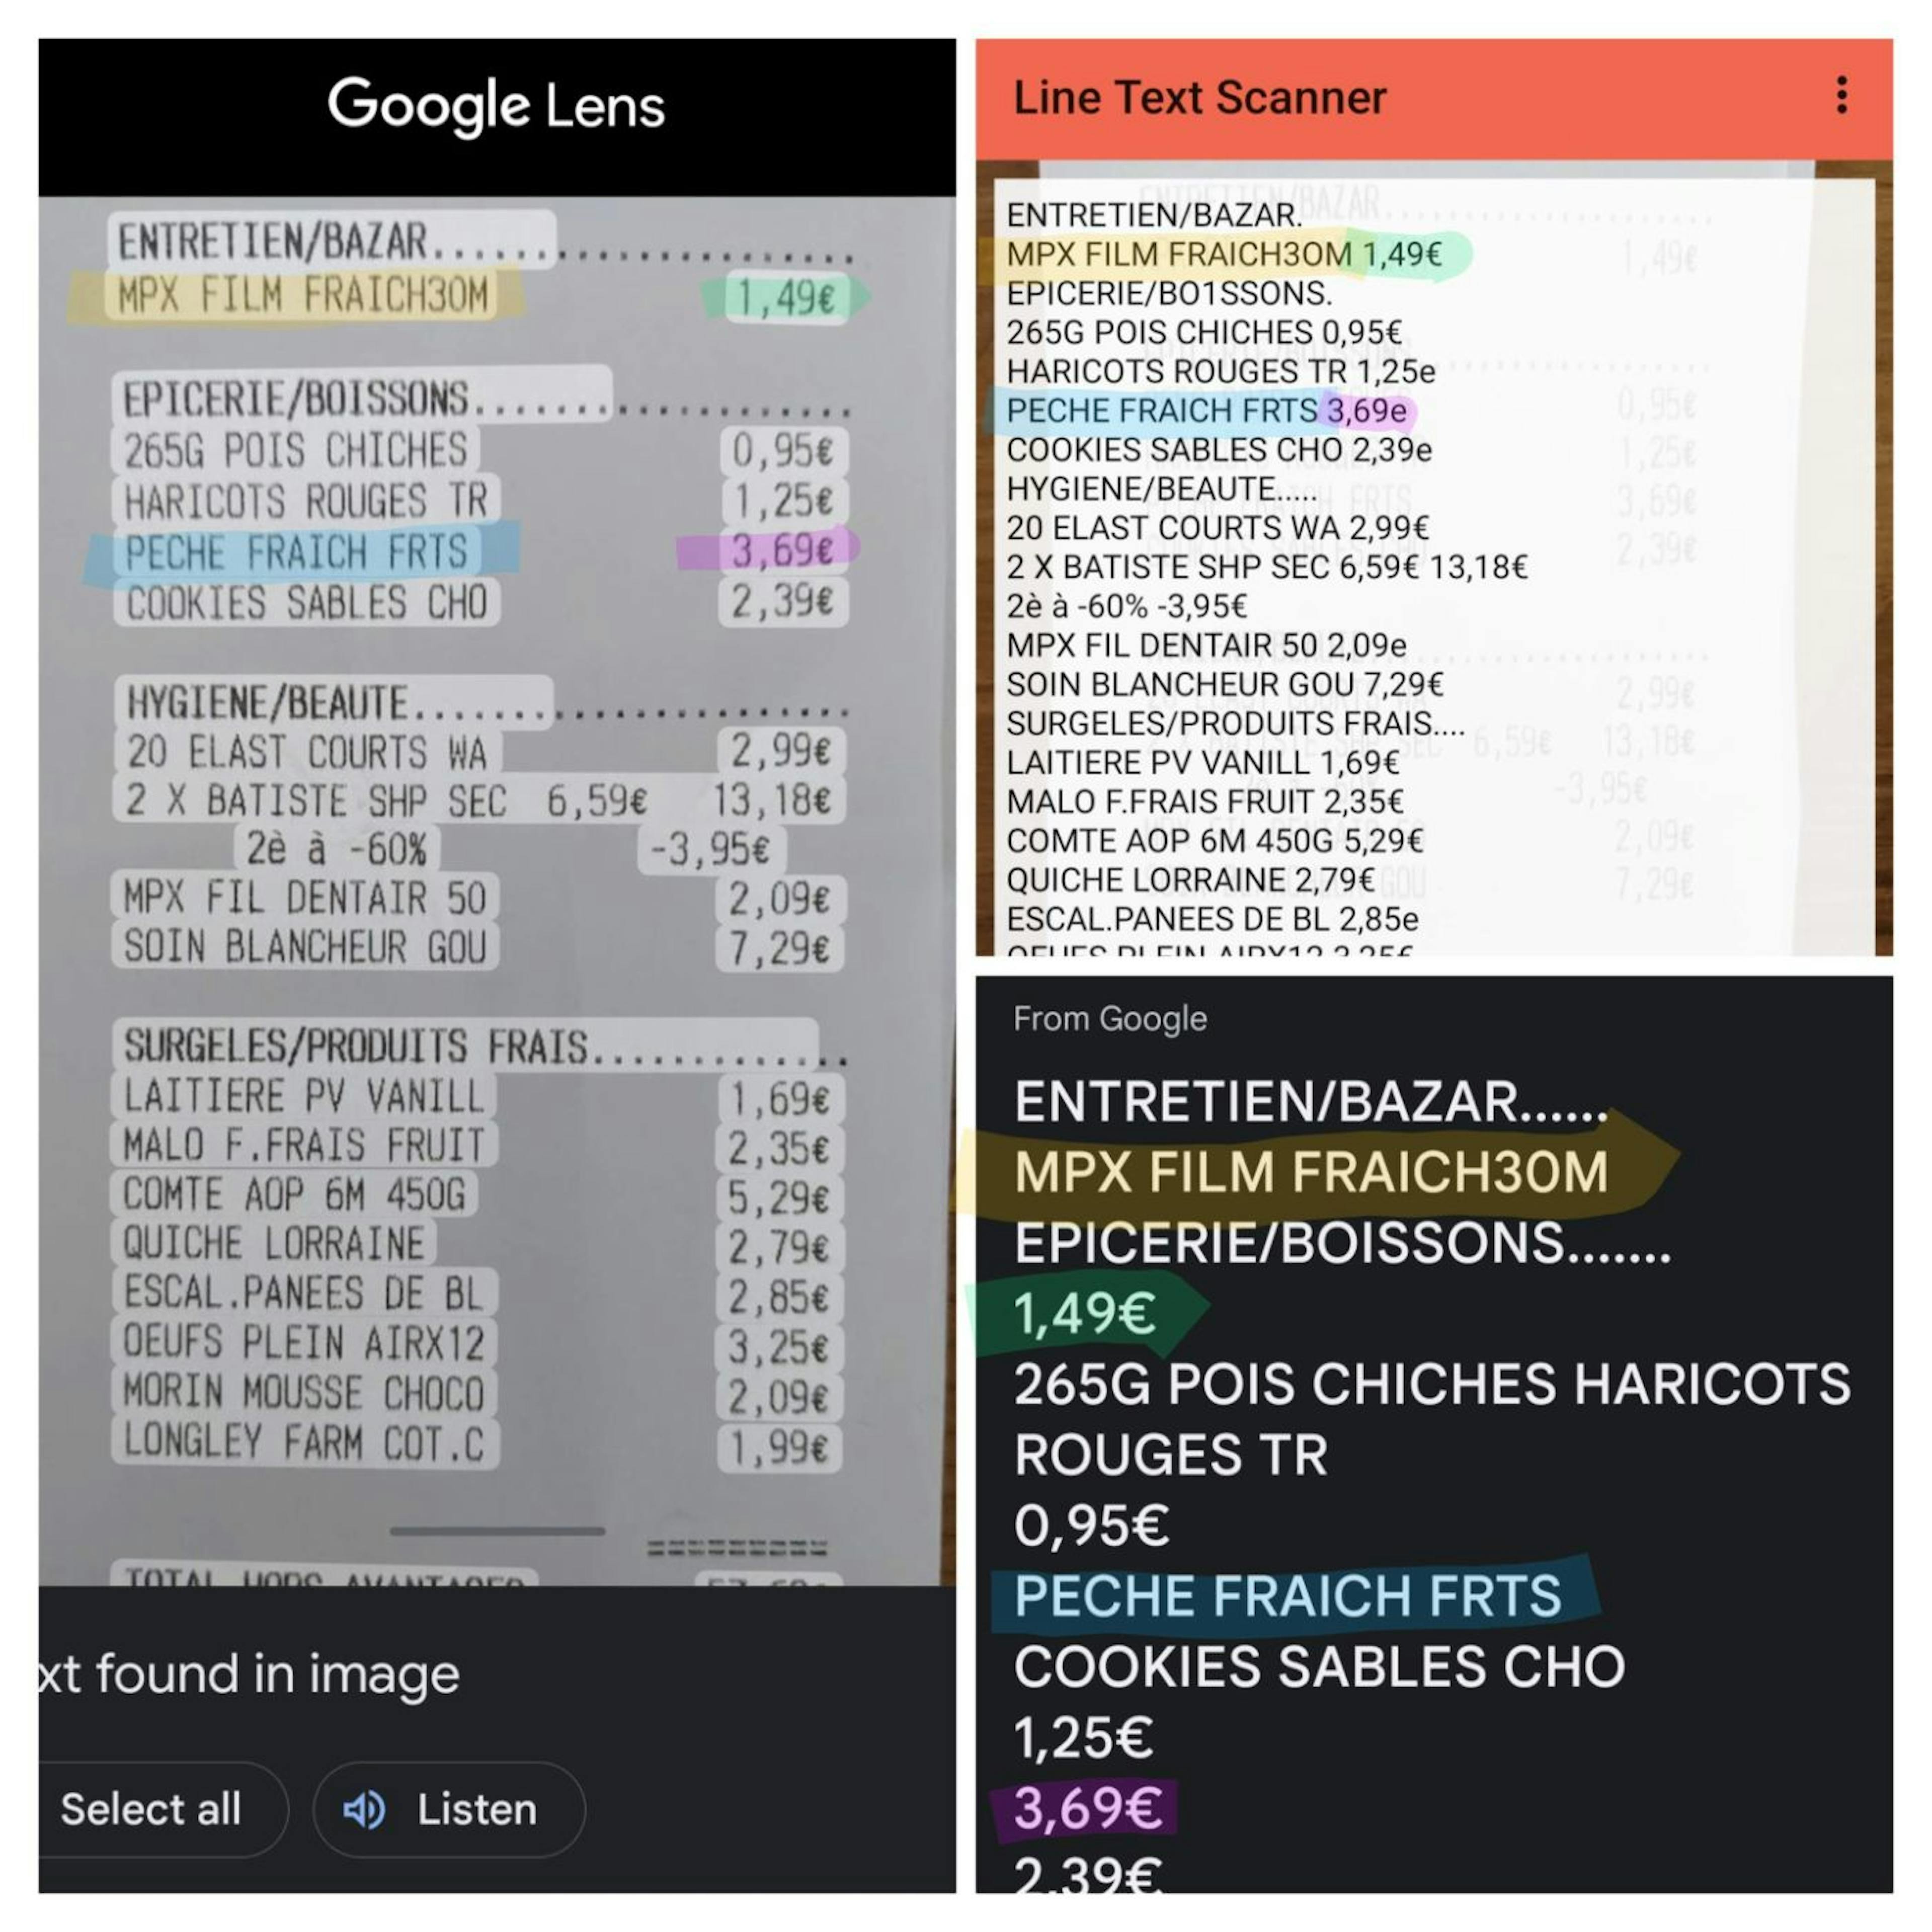 Line Text Scanner vs Google Lens reading tabular data